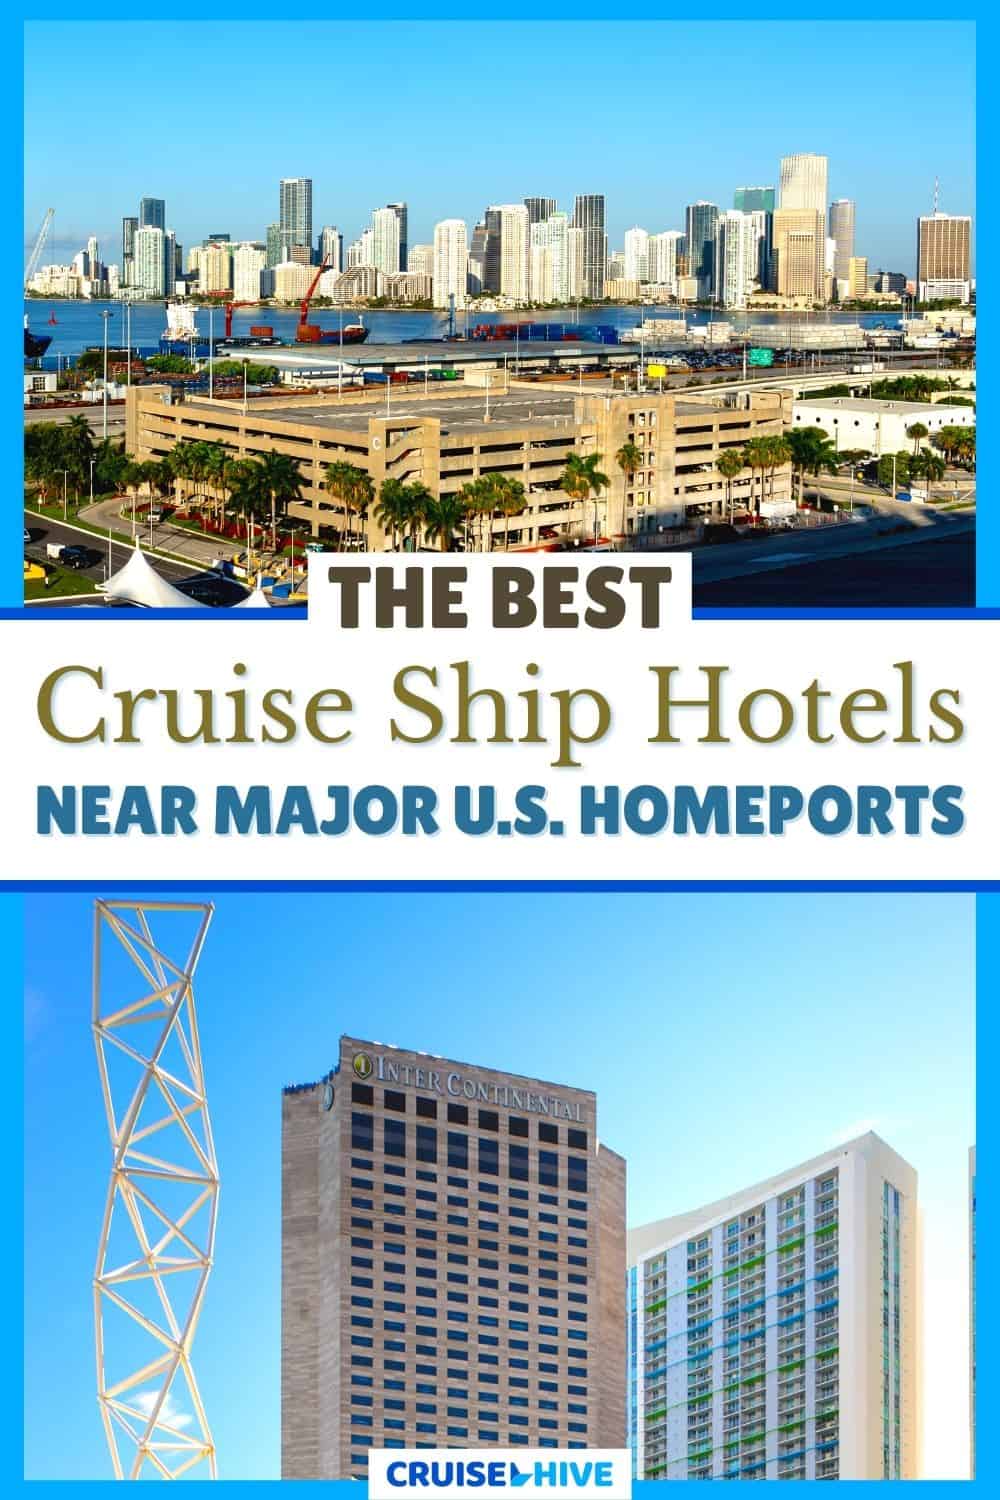 Cruise Ship Hotels Near U.S. Homeports